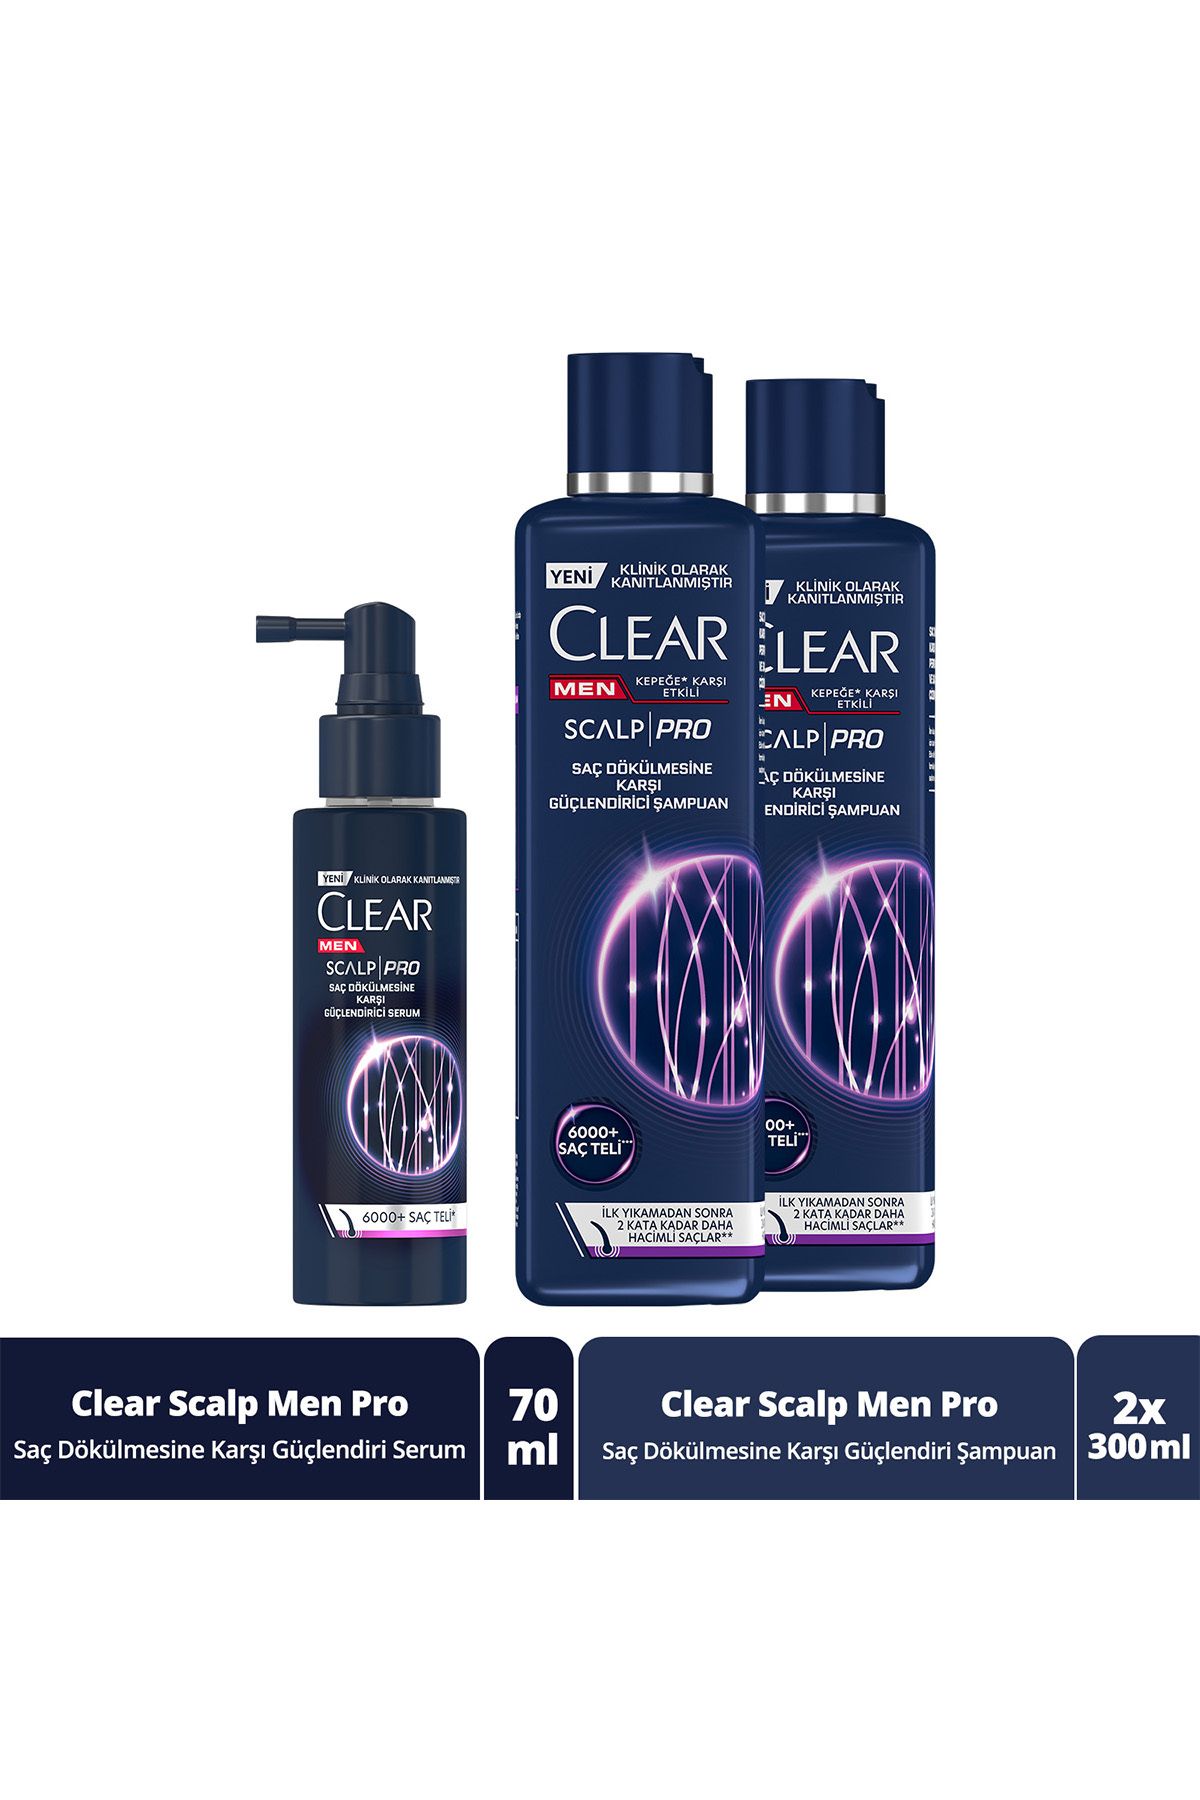 Clear Men Scalp Pro Güçlendirici Şampuan X2 ve Güçlendirici Serum Saç Dökülmesine Kepeğe Karşı